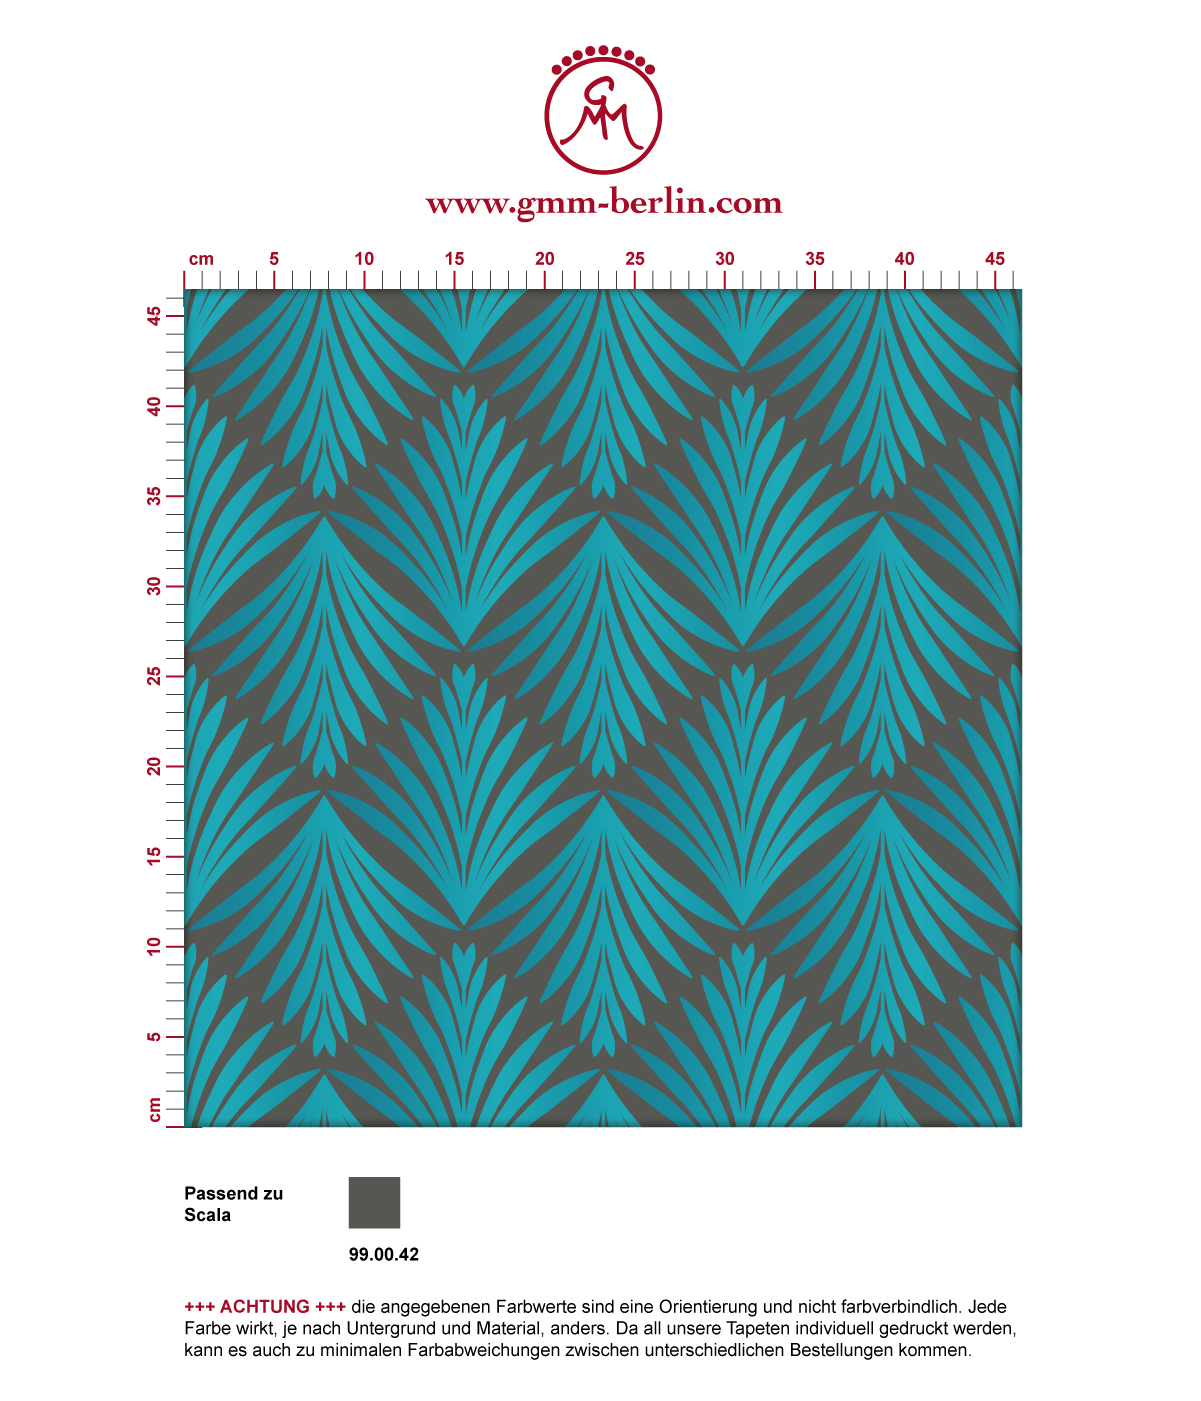 Türkise Tapete "Art Deco Akanthus" mit Blatt Muster auf grau angepasst an Scala Wandfarben. Aus dem GMM-BERLIN.com Sortiment: Schöne Tapeten in der Farbe: grün blau